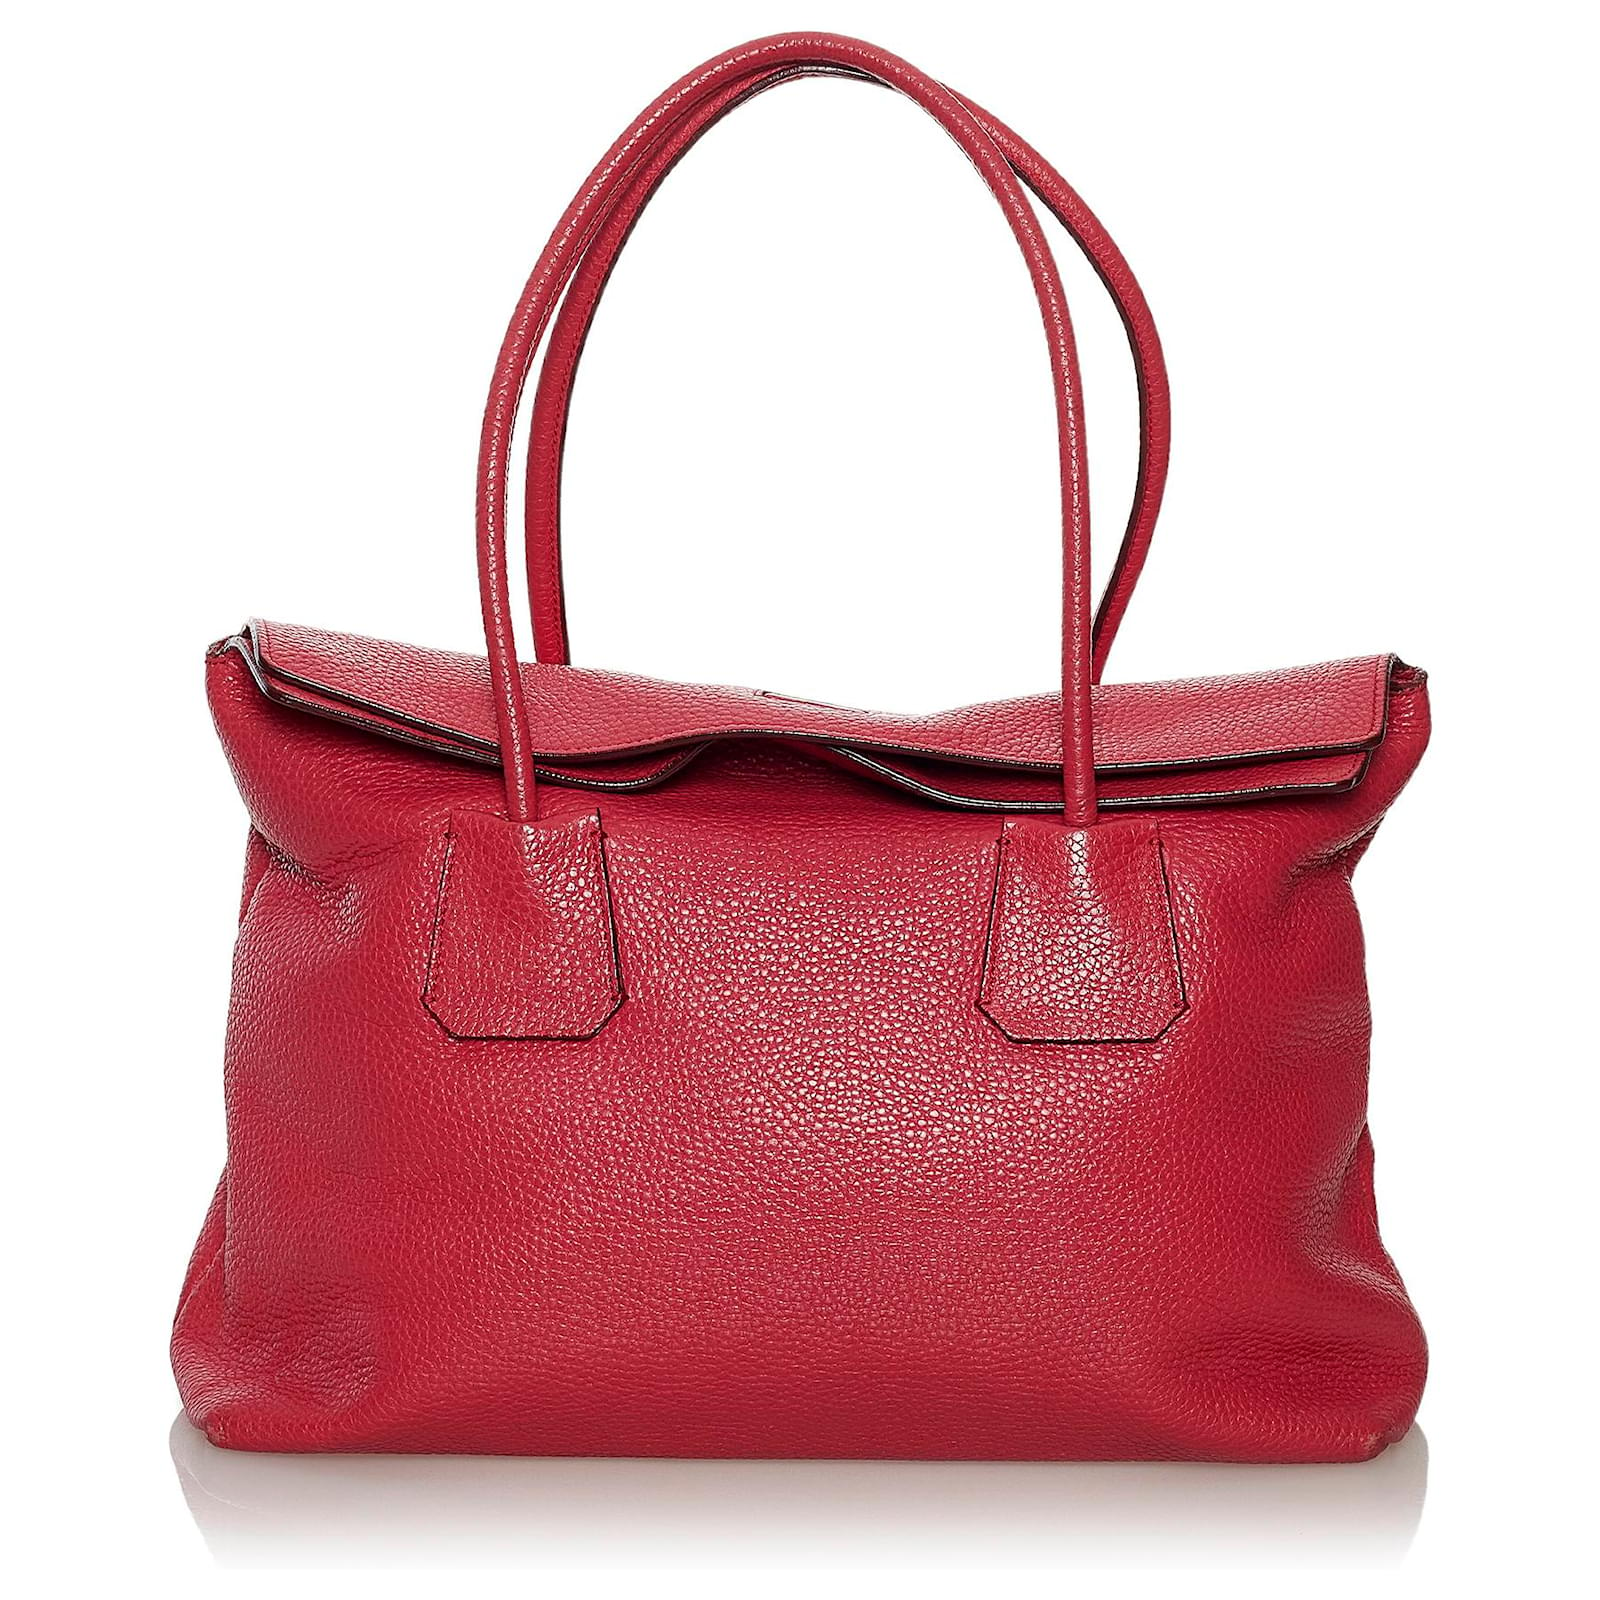 Burberry Red Baynard Leather Shoulder Bag Pony-style calfskin ref ...